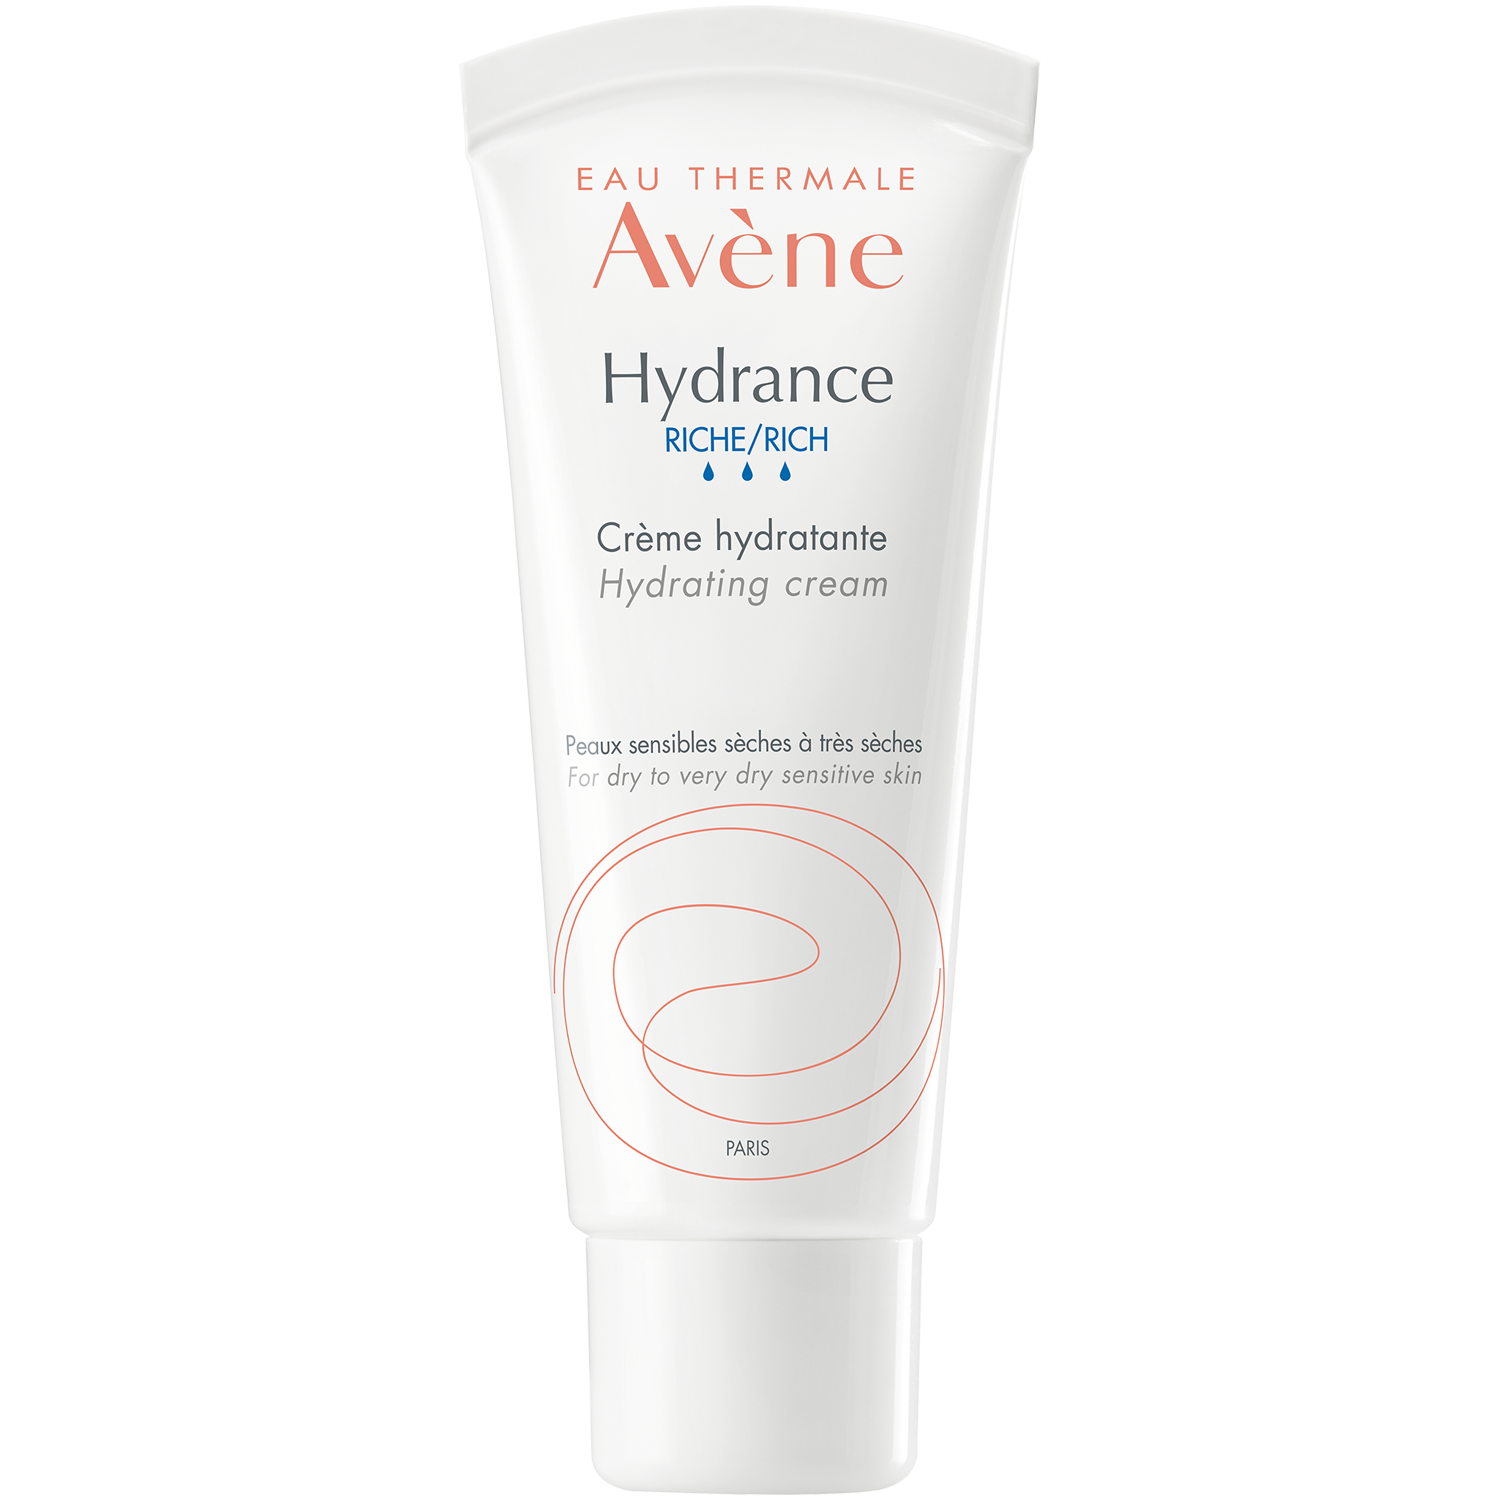 Avène Hydrance насыщенный увлажняющий крем для чувствительной и очень сухой кожи, 40 мл